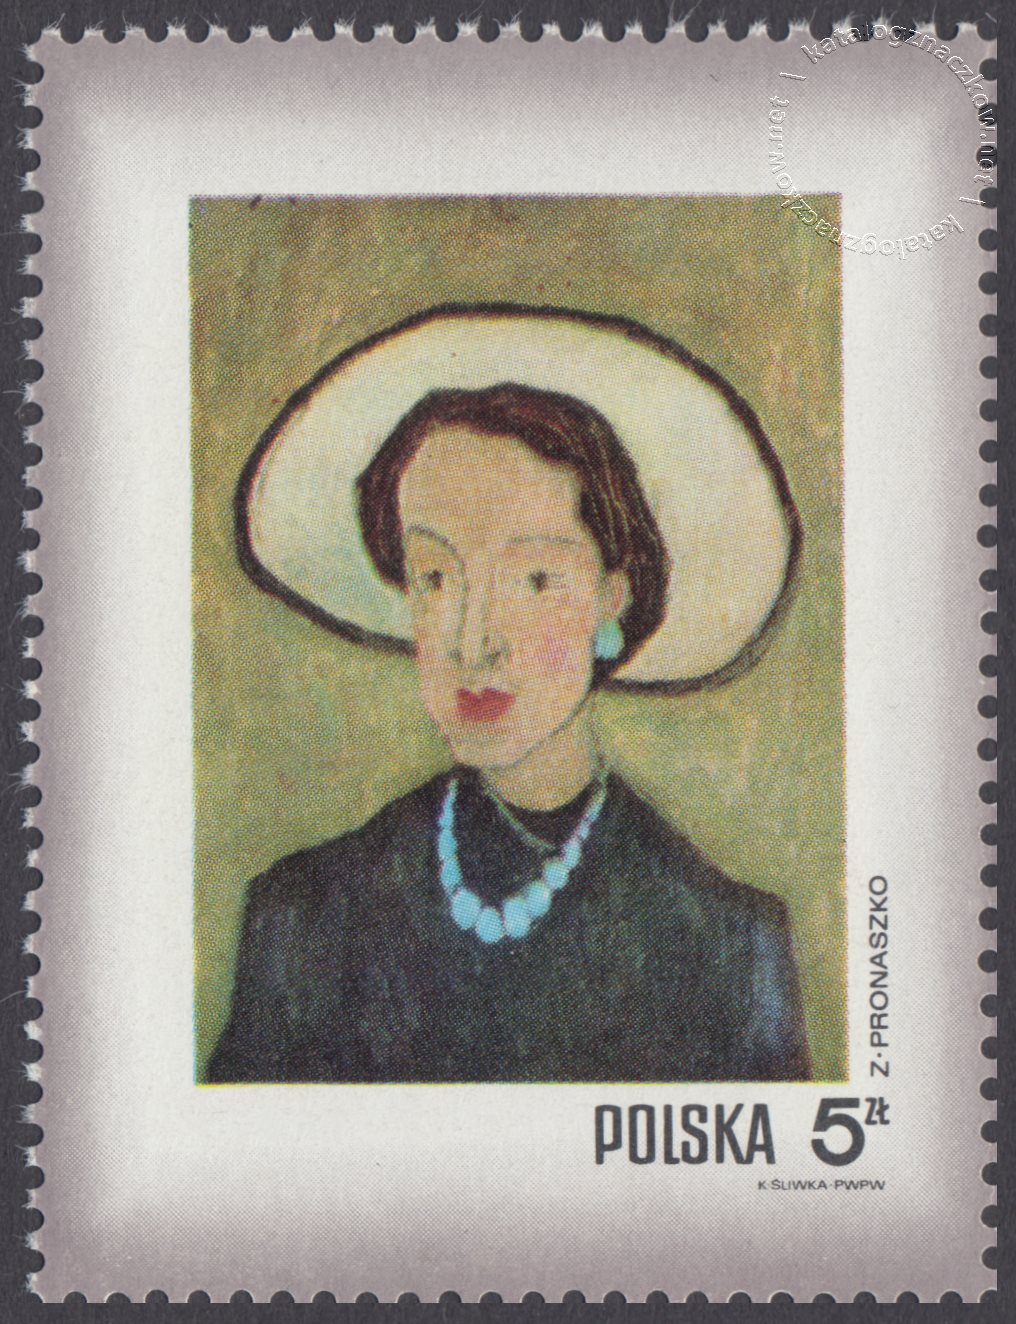 Dzień Znaczka – kobieta w malarstwie polskim znaczek nr 1969